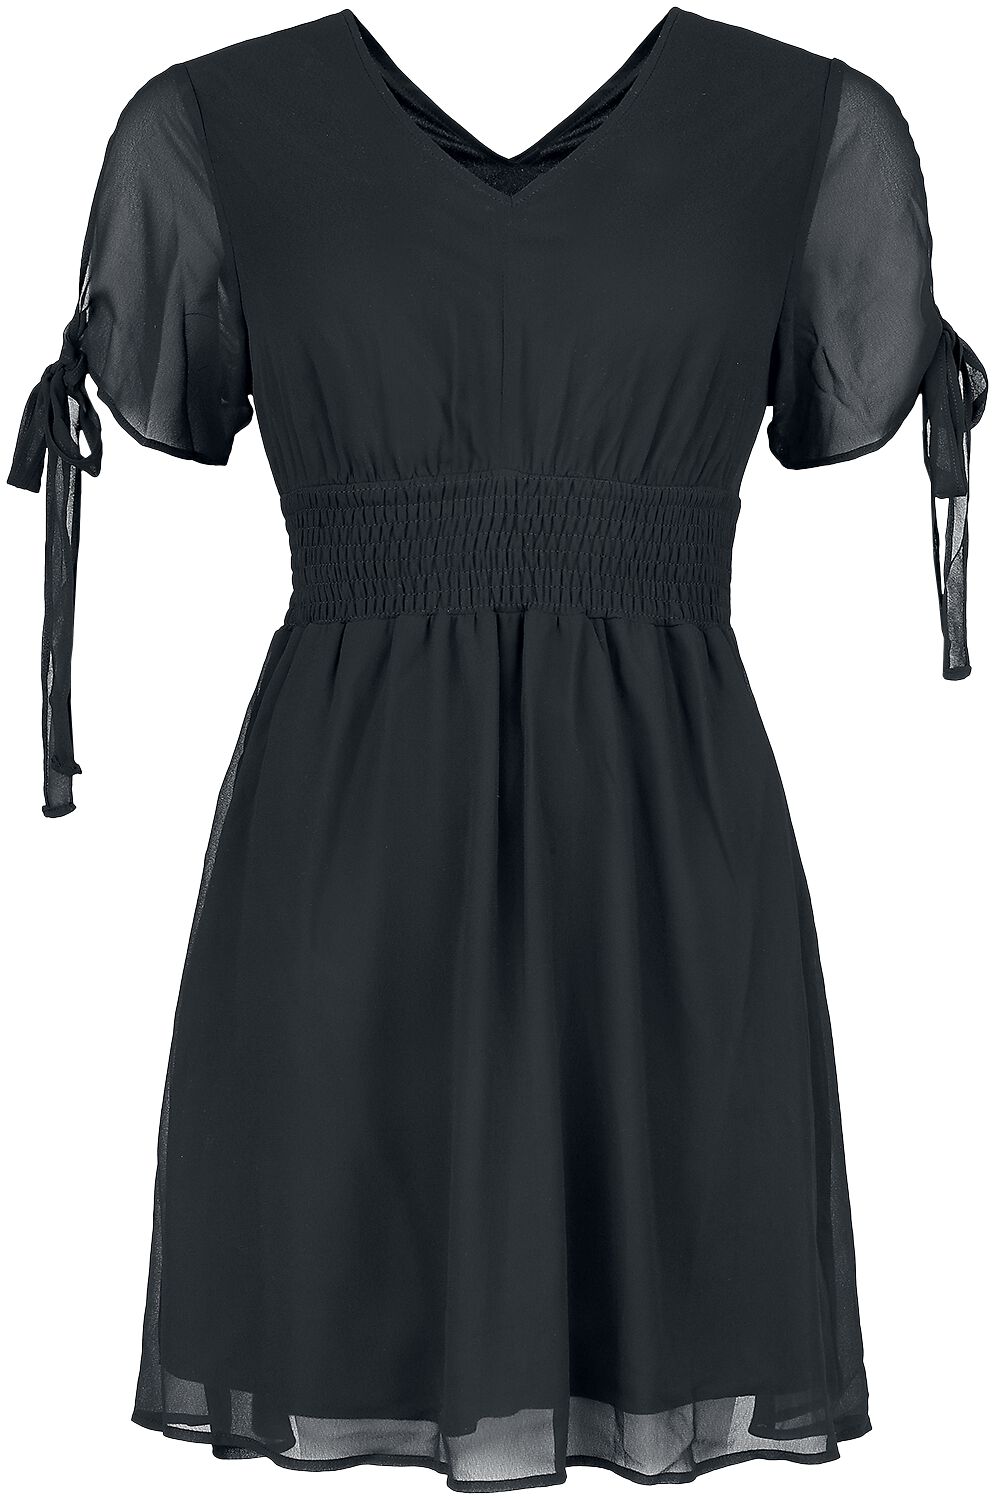 Innocent - Gothic Kurzes Kleid - Carme Dress - S bis 4XL - für Damen - Größe S - schwarz